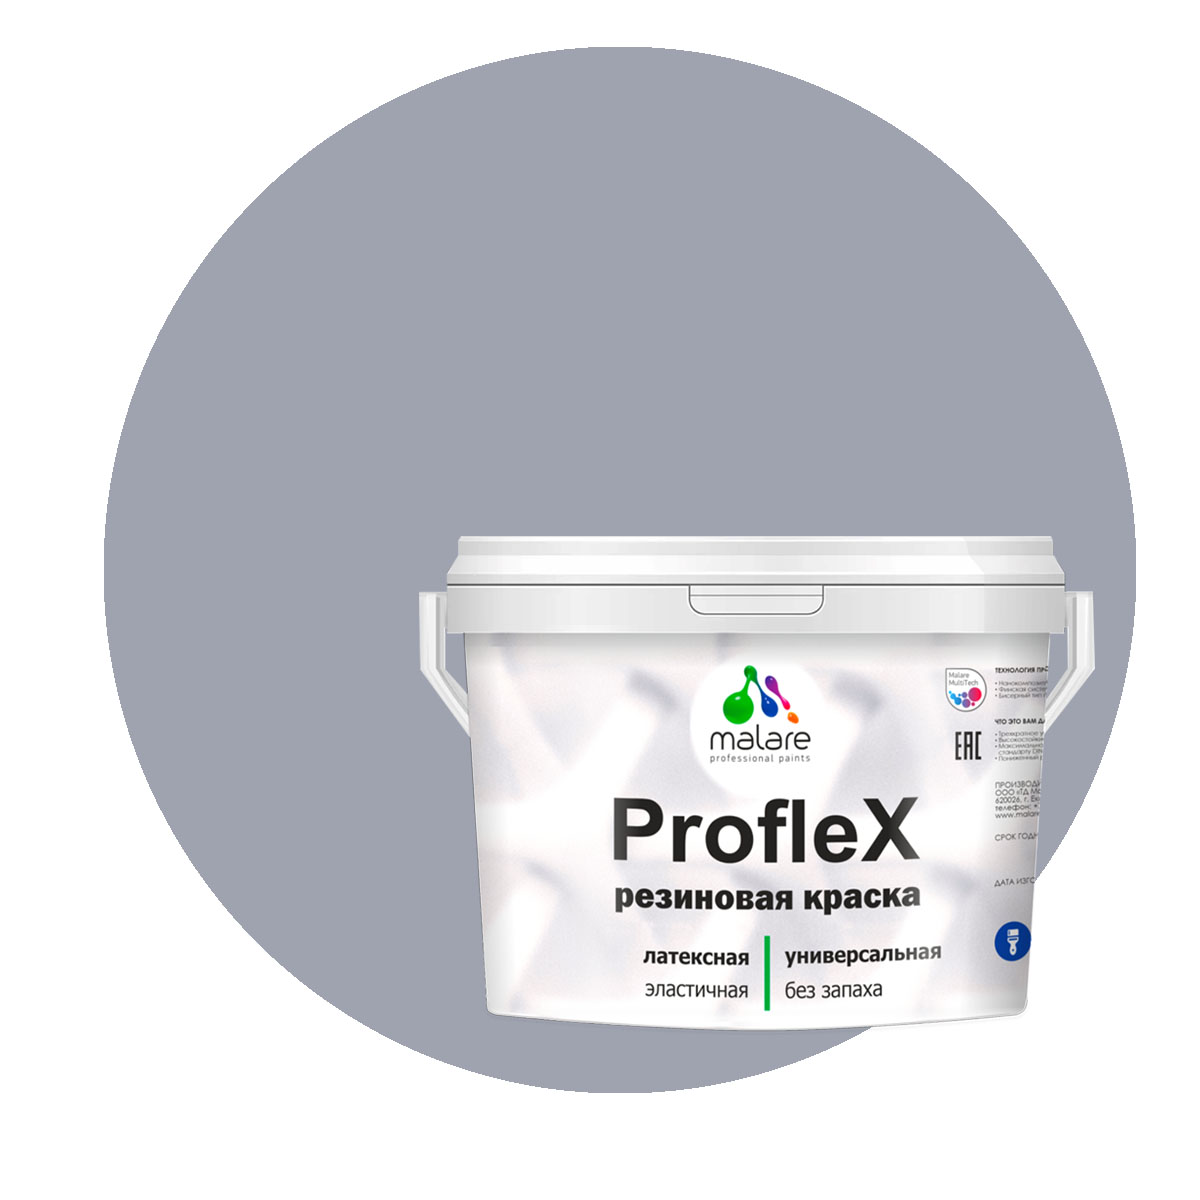 Краска Malare ProfleX для фасадов, интерьера, мебели, темно-серый, 1 кг. щелочной очиститель фасадов зданий plex